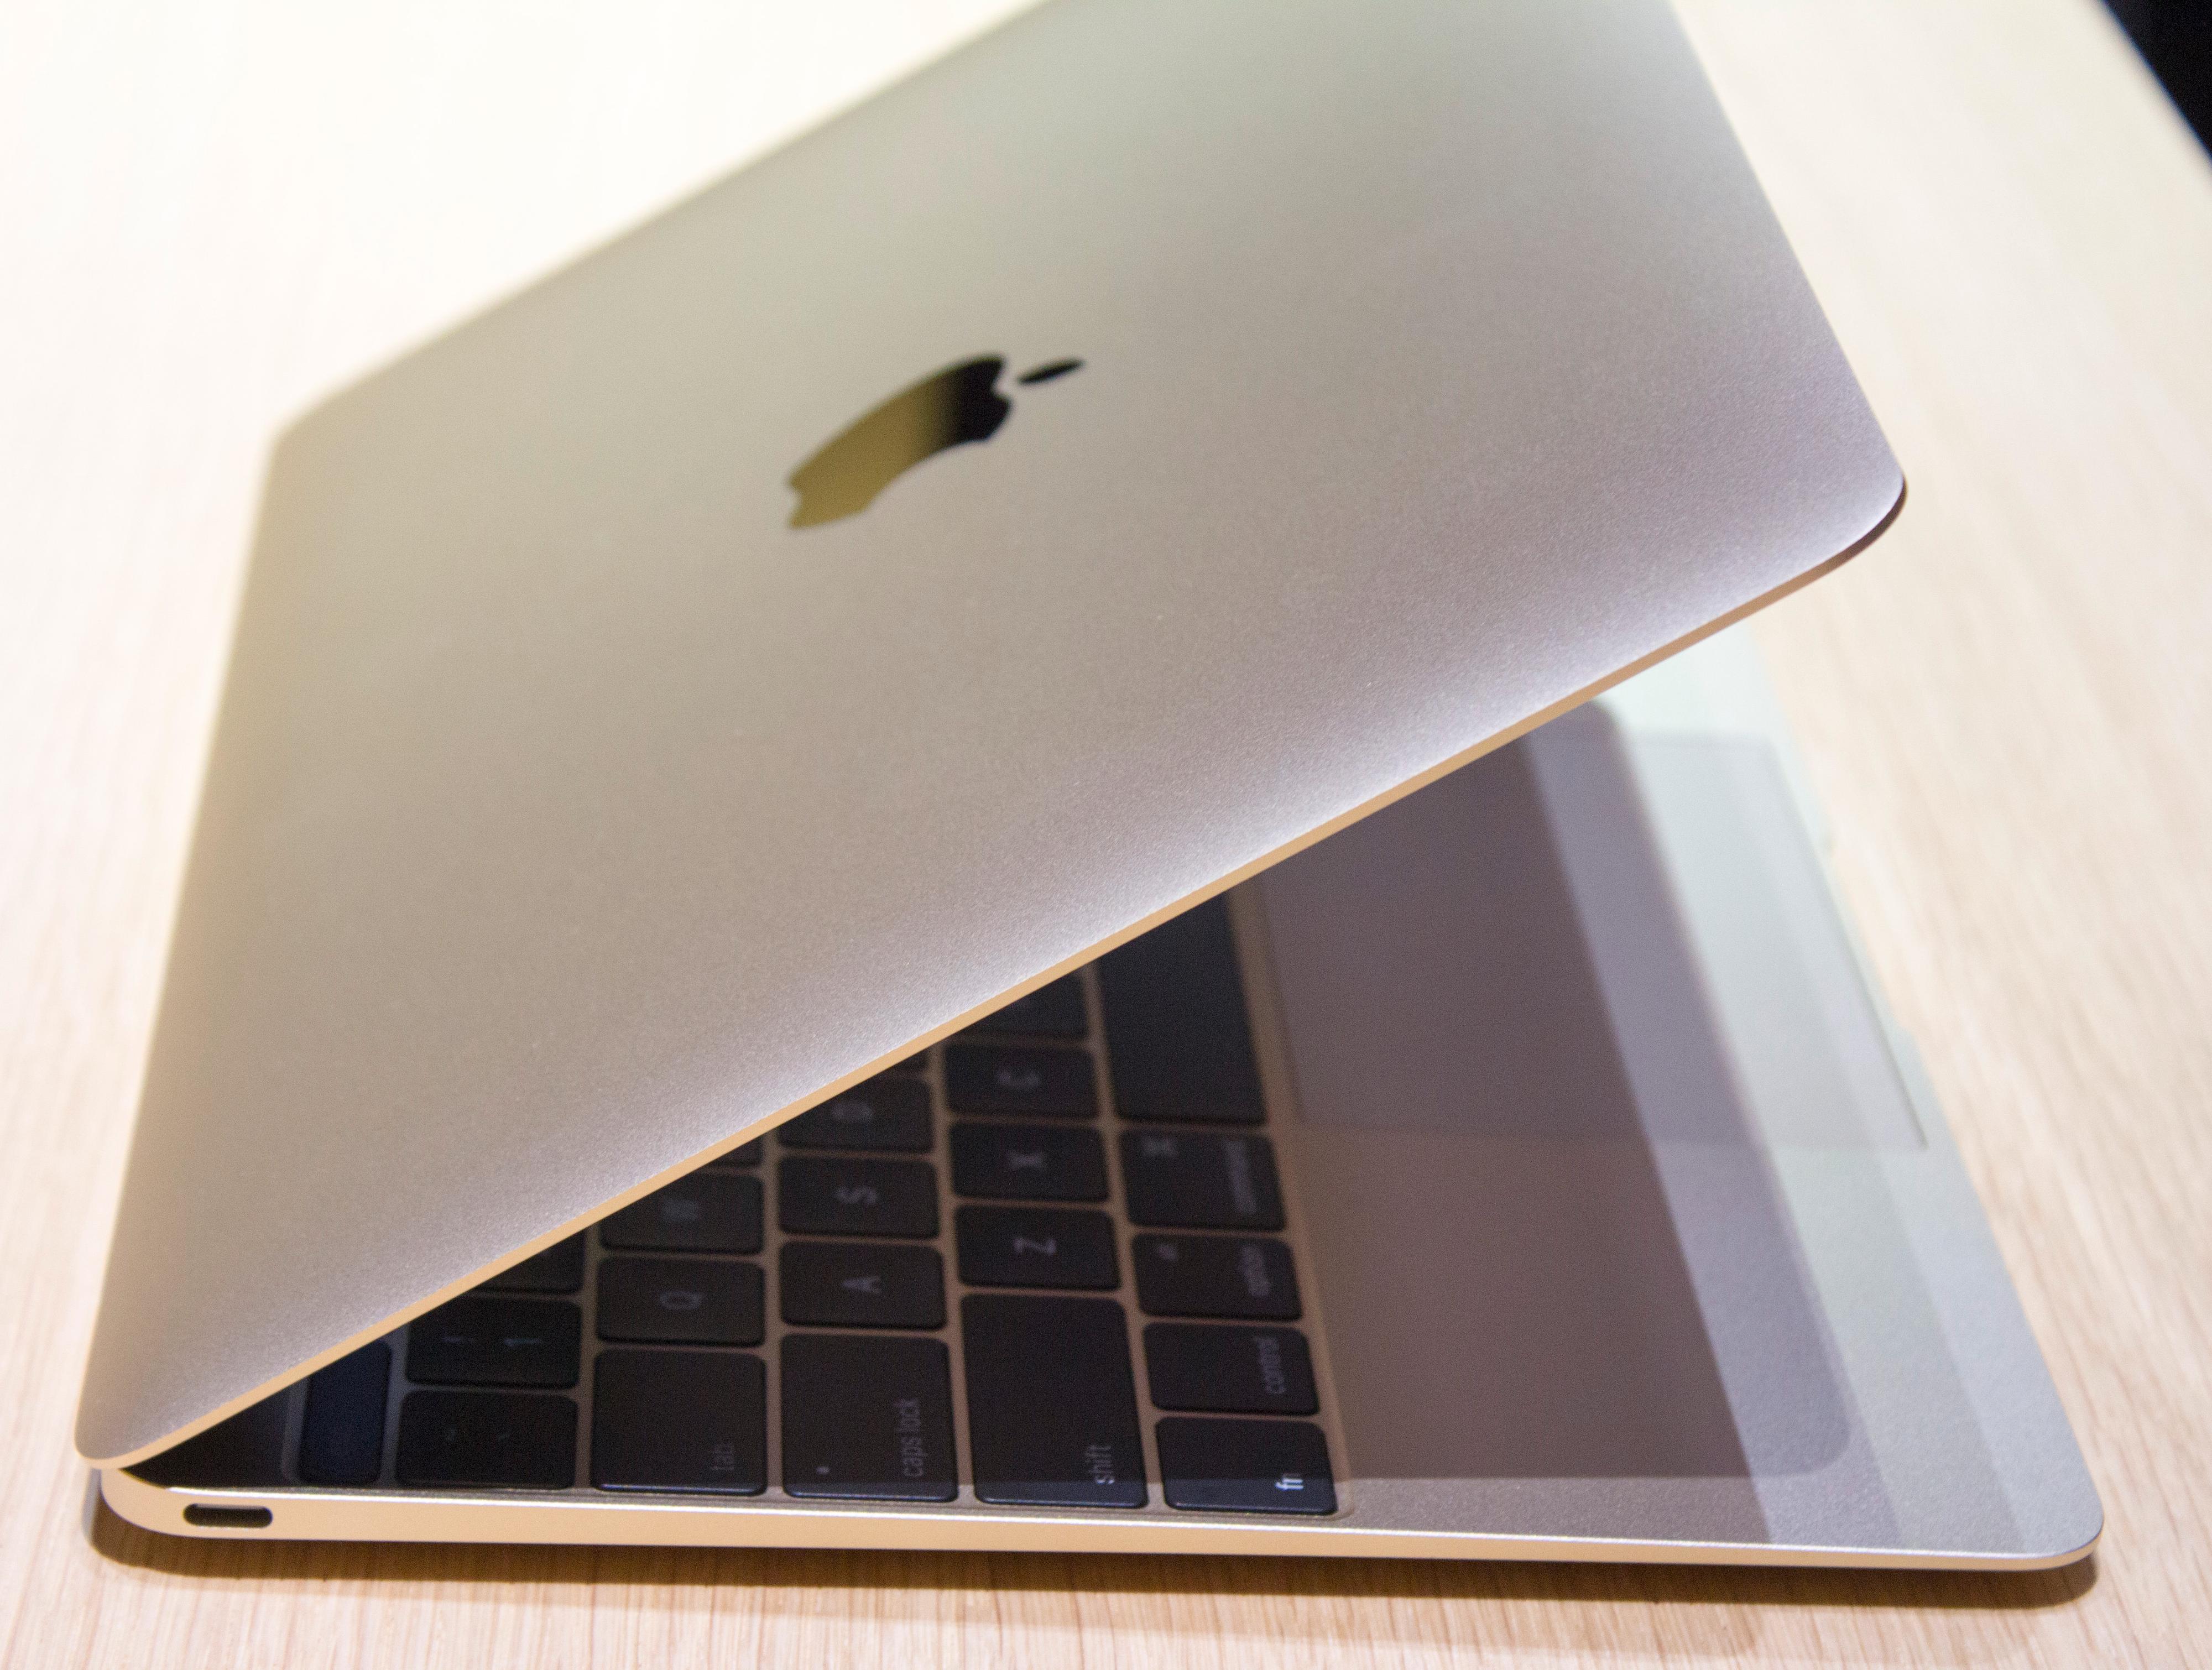 Én eneste kontakt har Apple kostet på seg i den nye MacBooken. Nye USB type C gjør sin debut i en vanlig datamaskin her. Kontakten kan overføre store mengder data, fungere som skjermtilkobling og mye mer. Foto: Finn Jarle Kvalheim, Tek.no